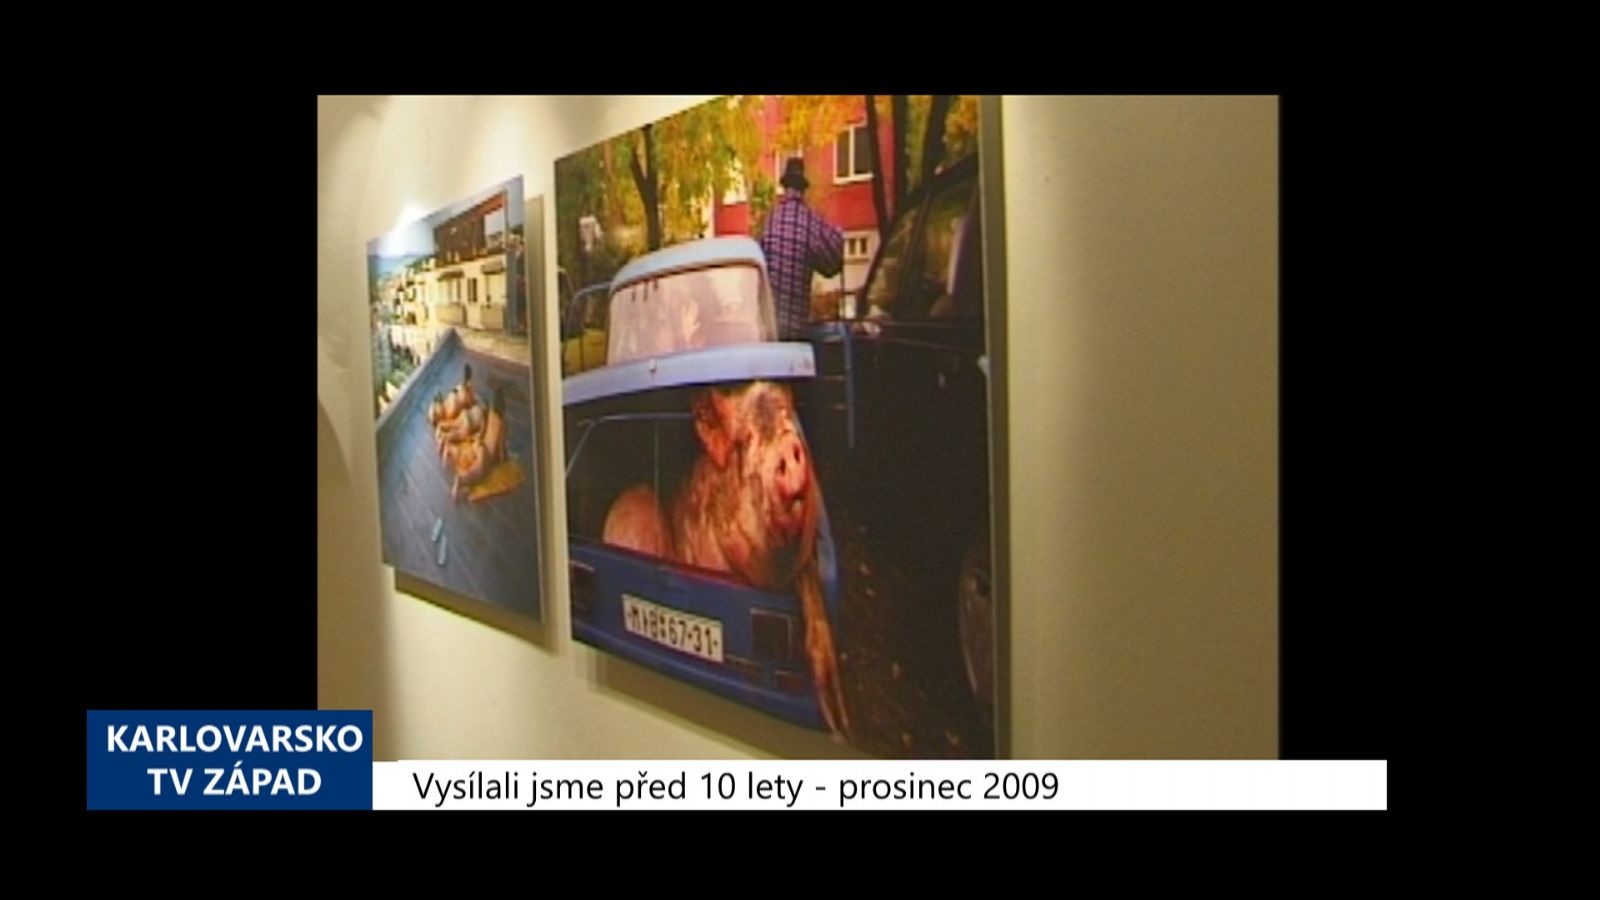 2009 - Cheb: Slovenská sídliště objektivy fotografů (3927) (TV Západ)